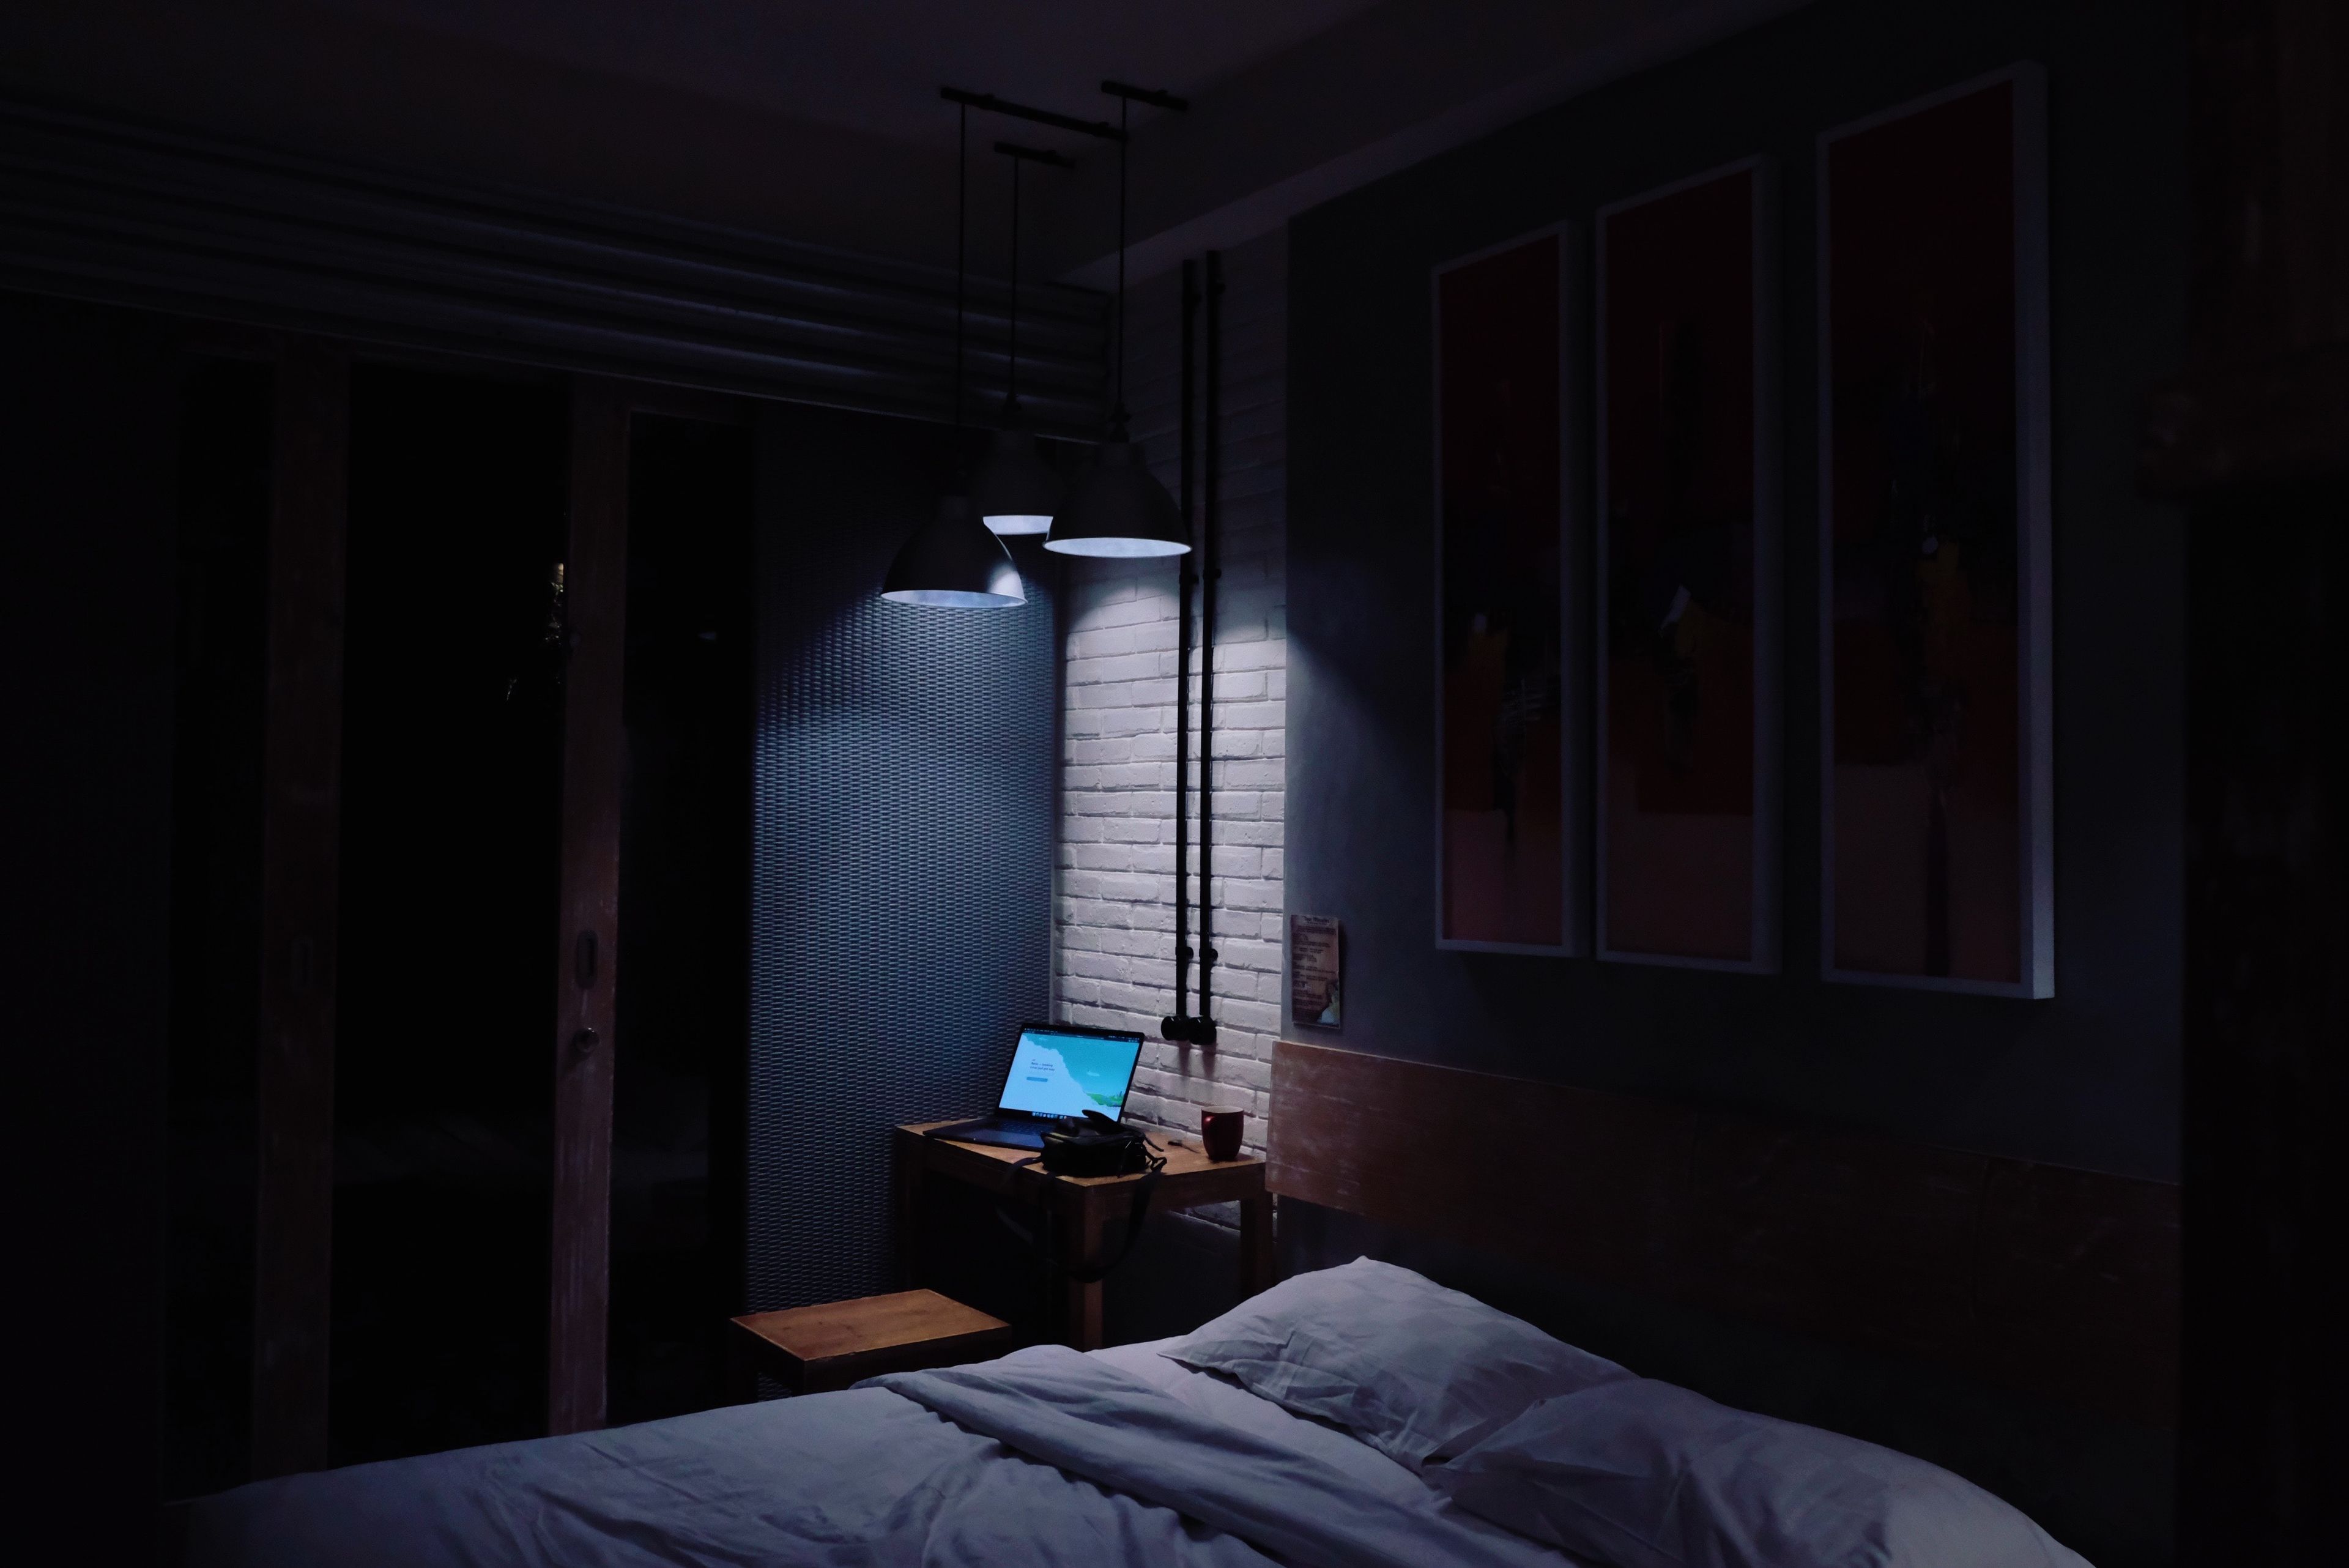 Dormir con luz artificial puede hacerte engordar.